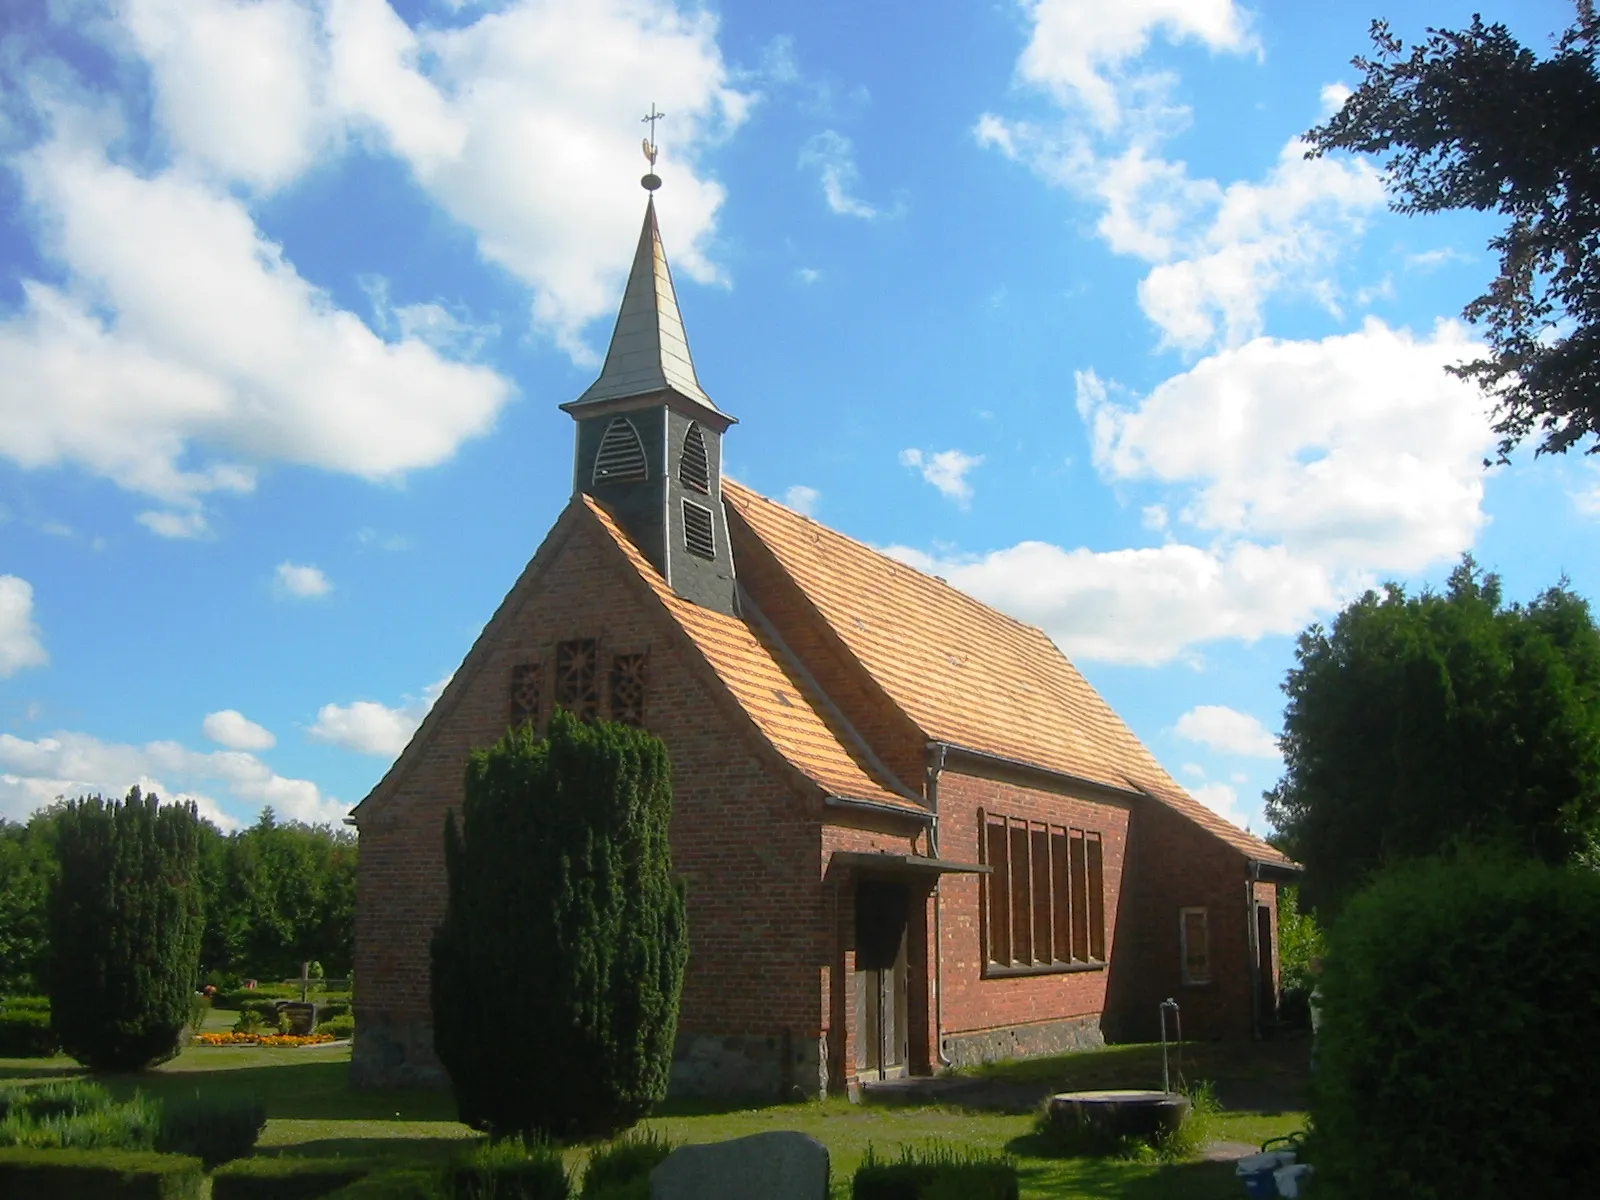 Photo showing: Blick auf die Kirche in Gresenhorst, ein Ortsteil von Marlow in Mecklenburg-Vorpommern; Blickrichtung vom Parkplatz aus